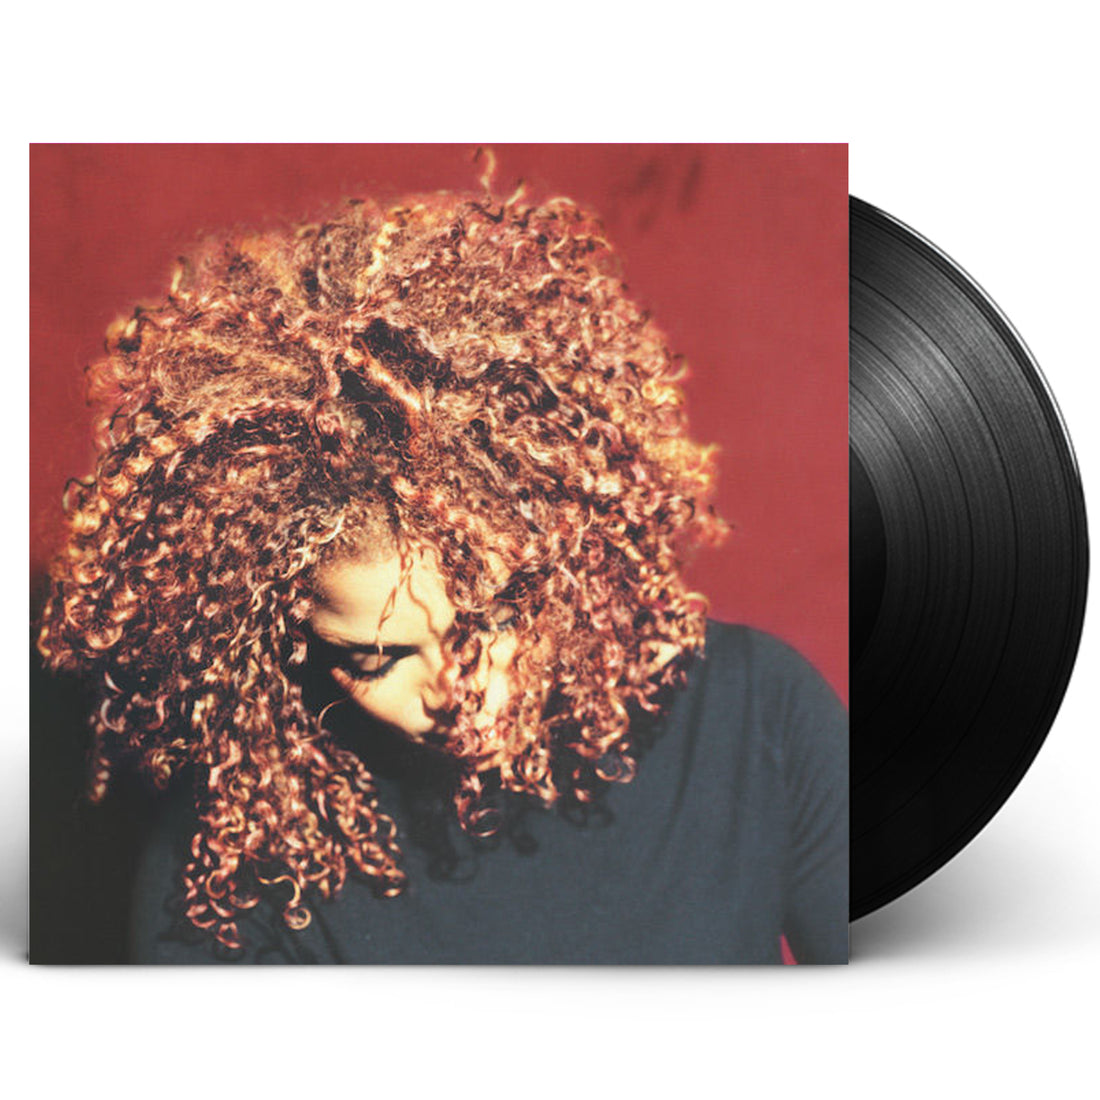 Janet Jackson "The Velvet Rope" 2xLP Vinyl